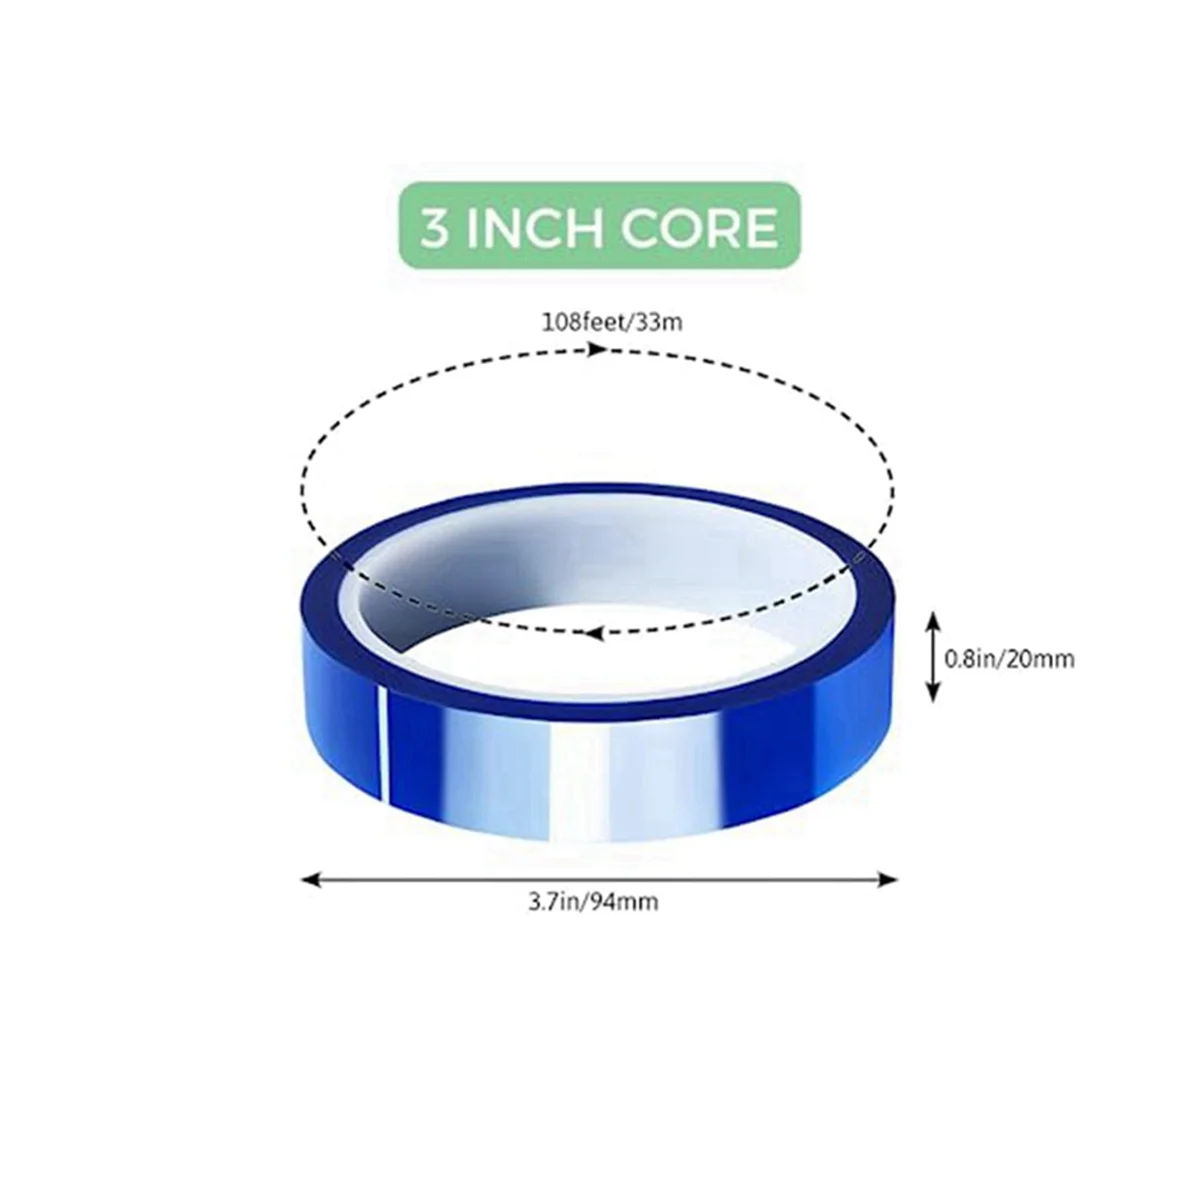 20 mm Tepelne Odolná Páska na Sublimačná , 33m (108 Ft) 3Inch Core Vysokých Temp, Silnú Priľnavosť, Modrá, 3 Pack